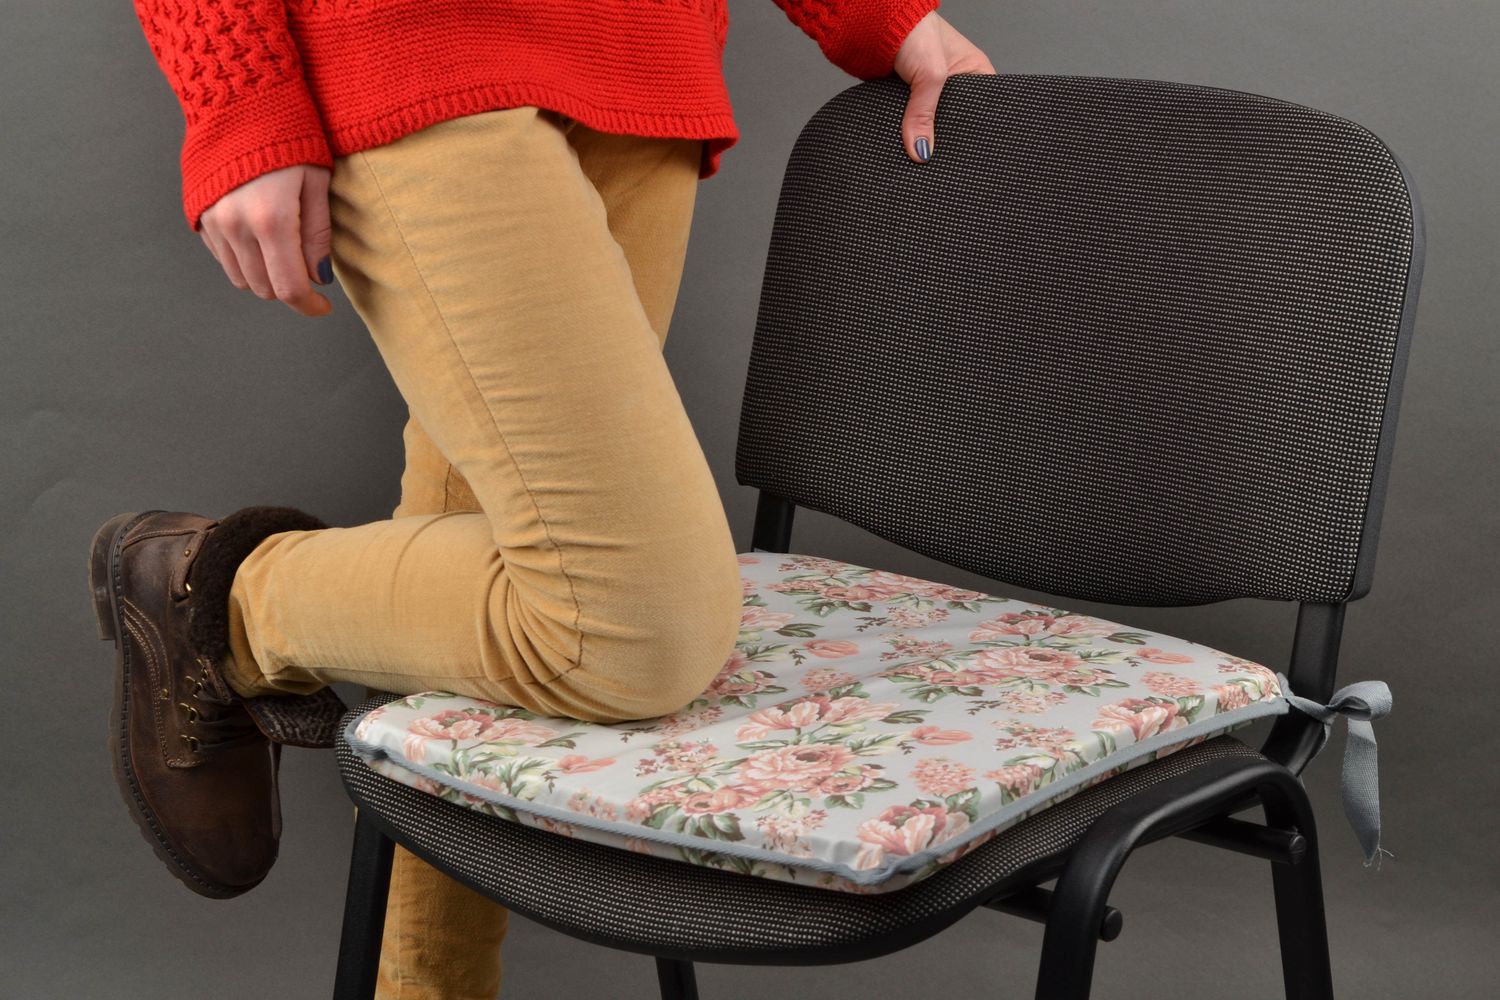 Плоская подушка на стул с цветочным принтом фото 1